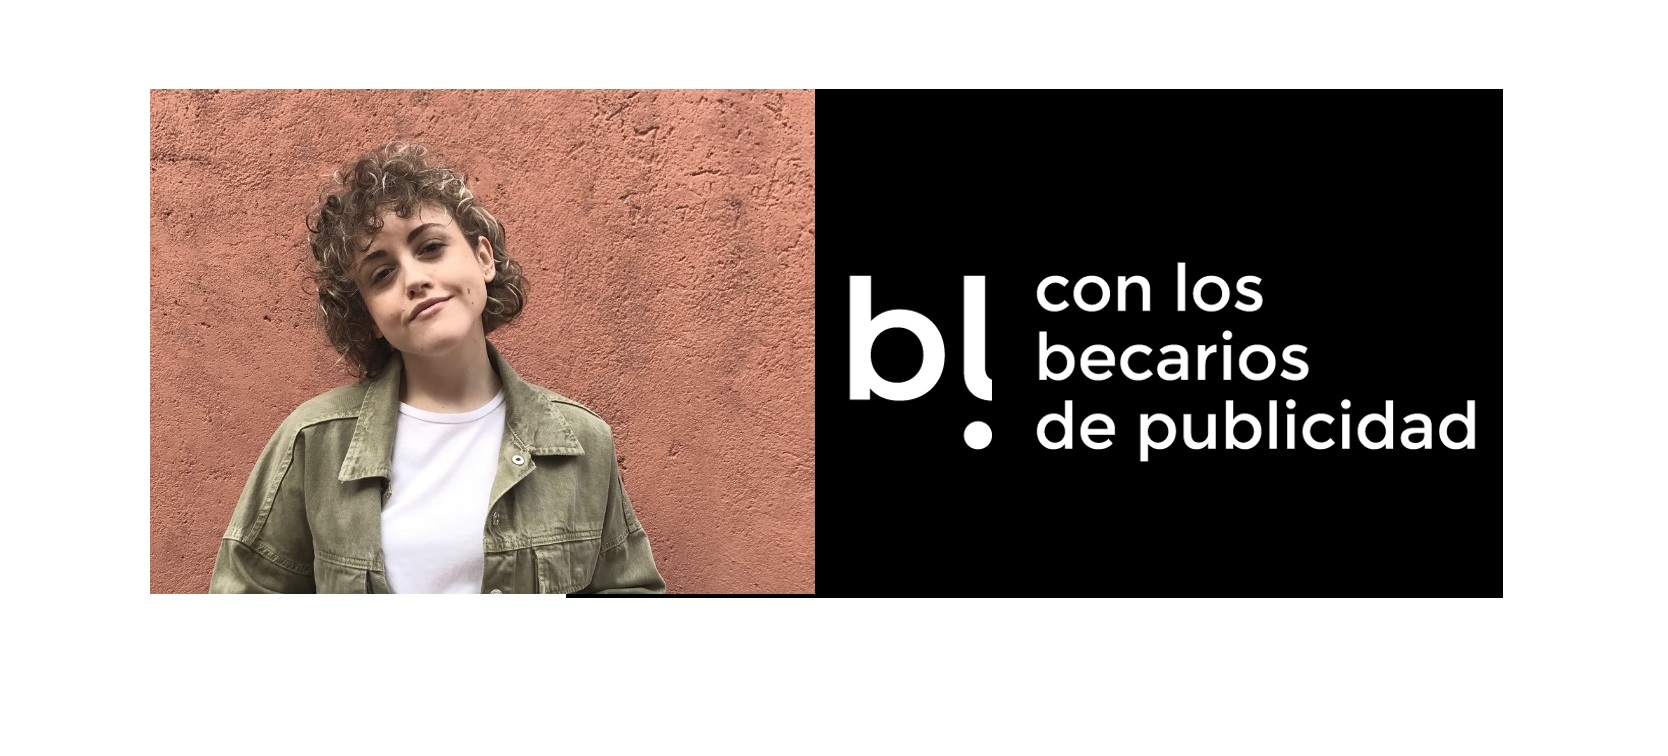 bl, becarios, publicidad, logo, Mariajo Jiméne, programapublicidad